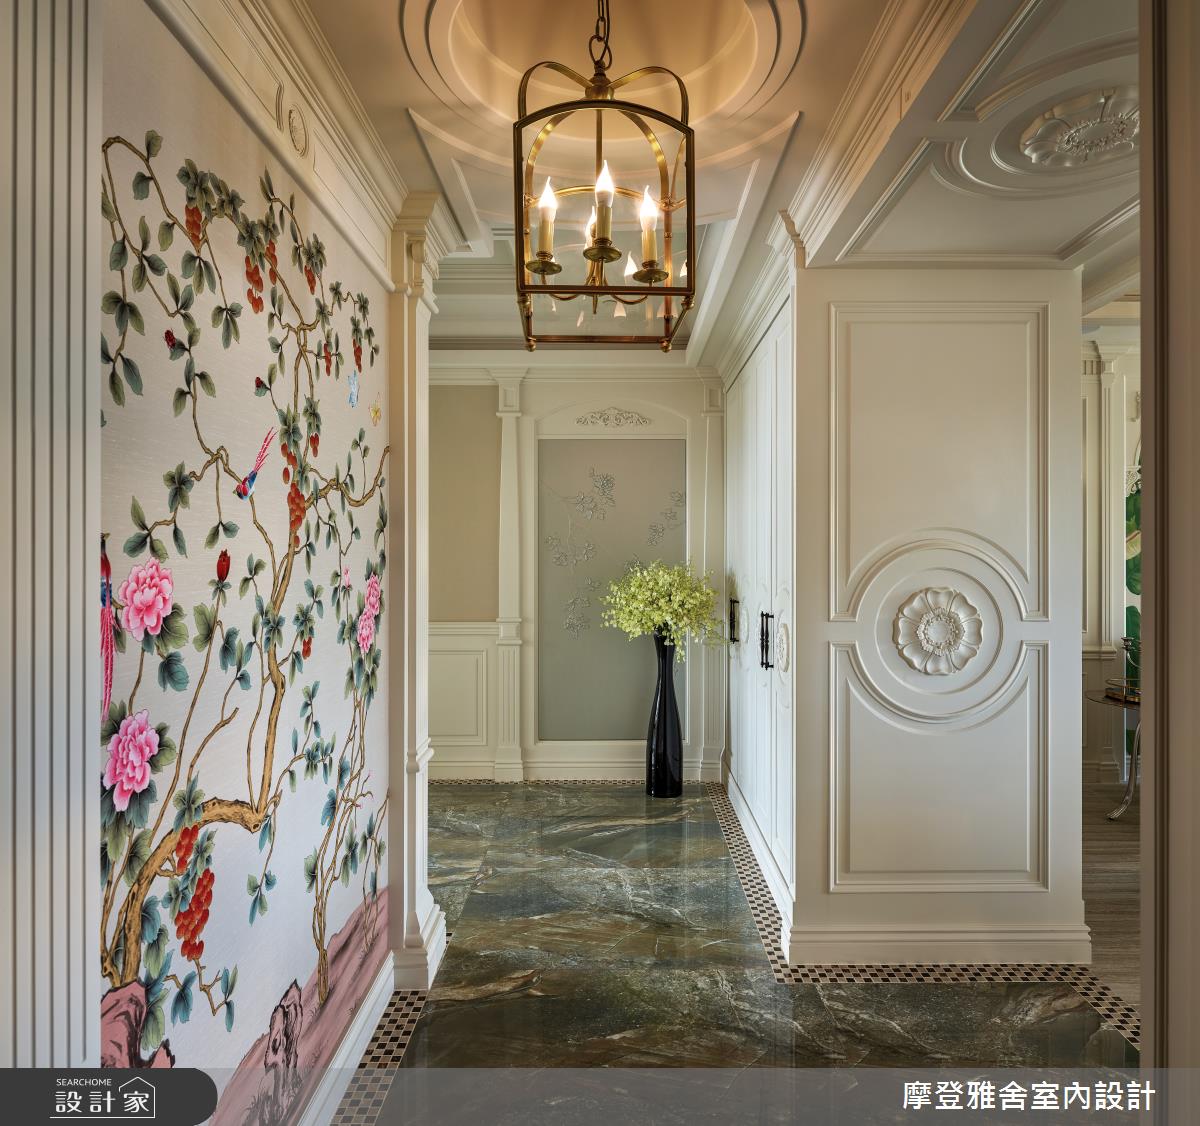 雙玄關壁面以手繪壁布、皮雕鋪陳，展現低奢且繽紛的入門端景。